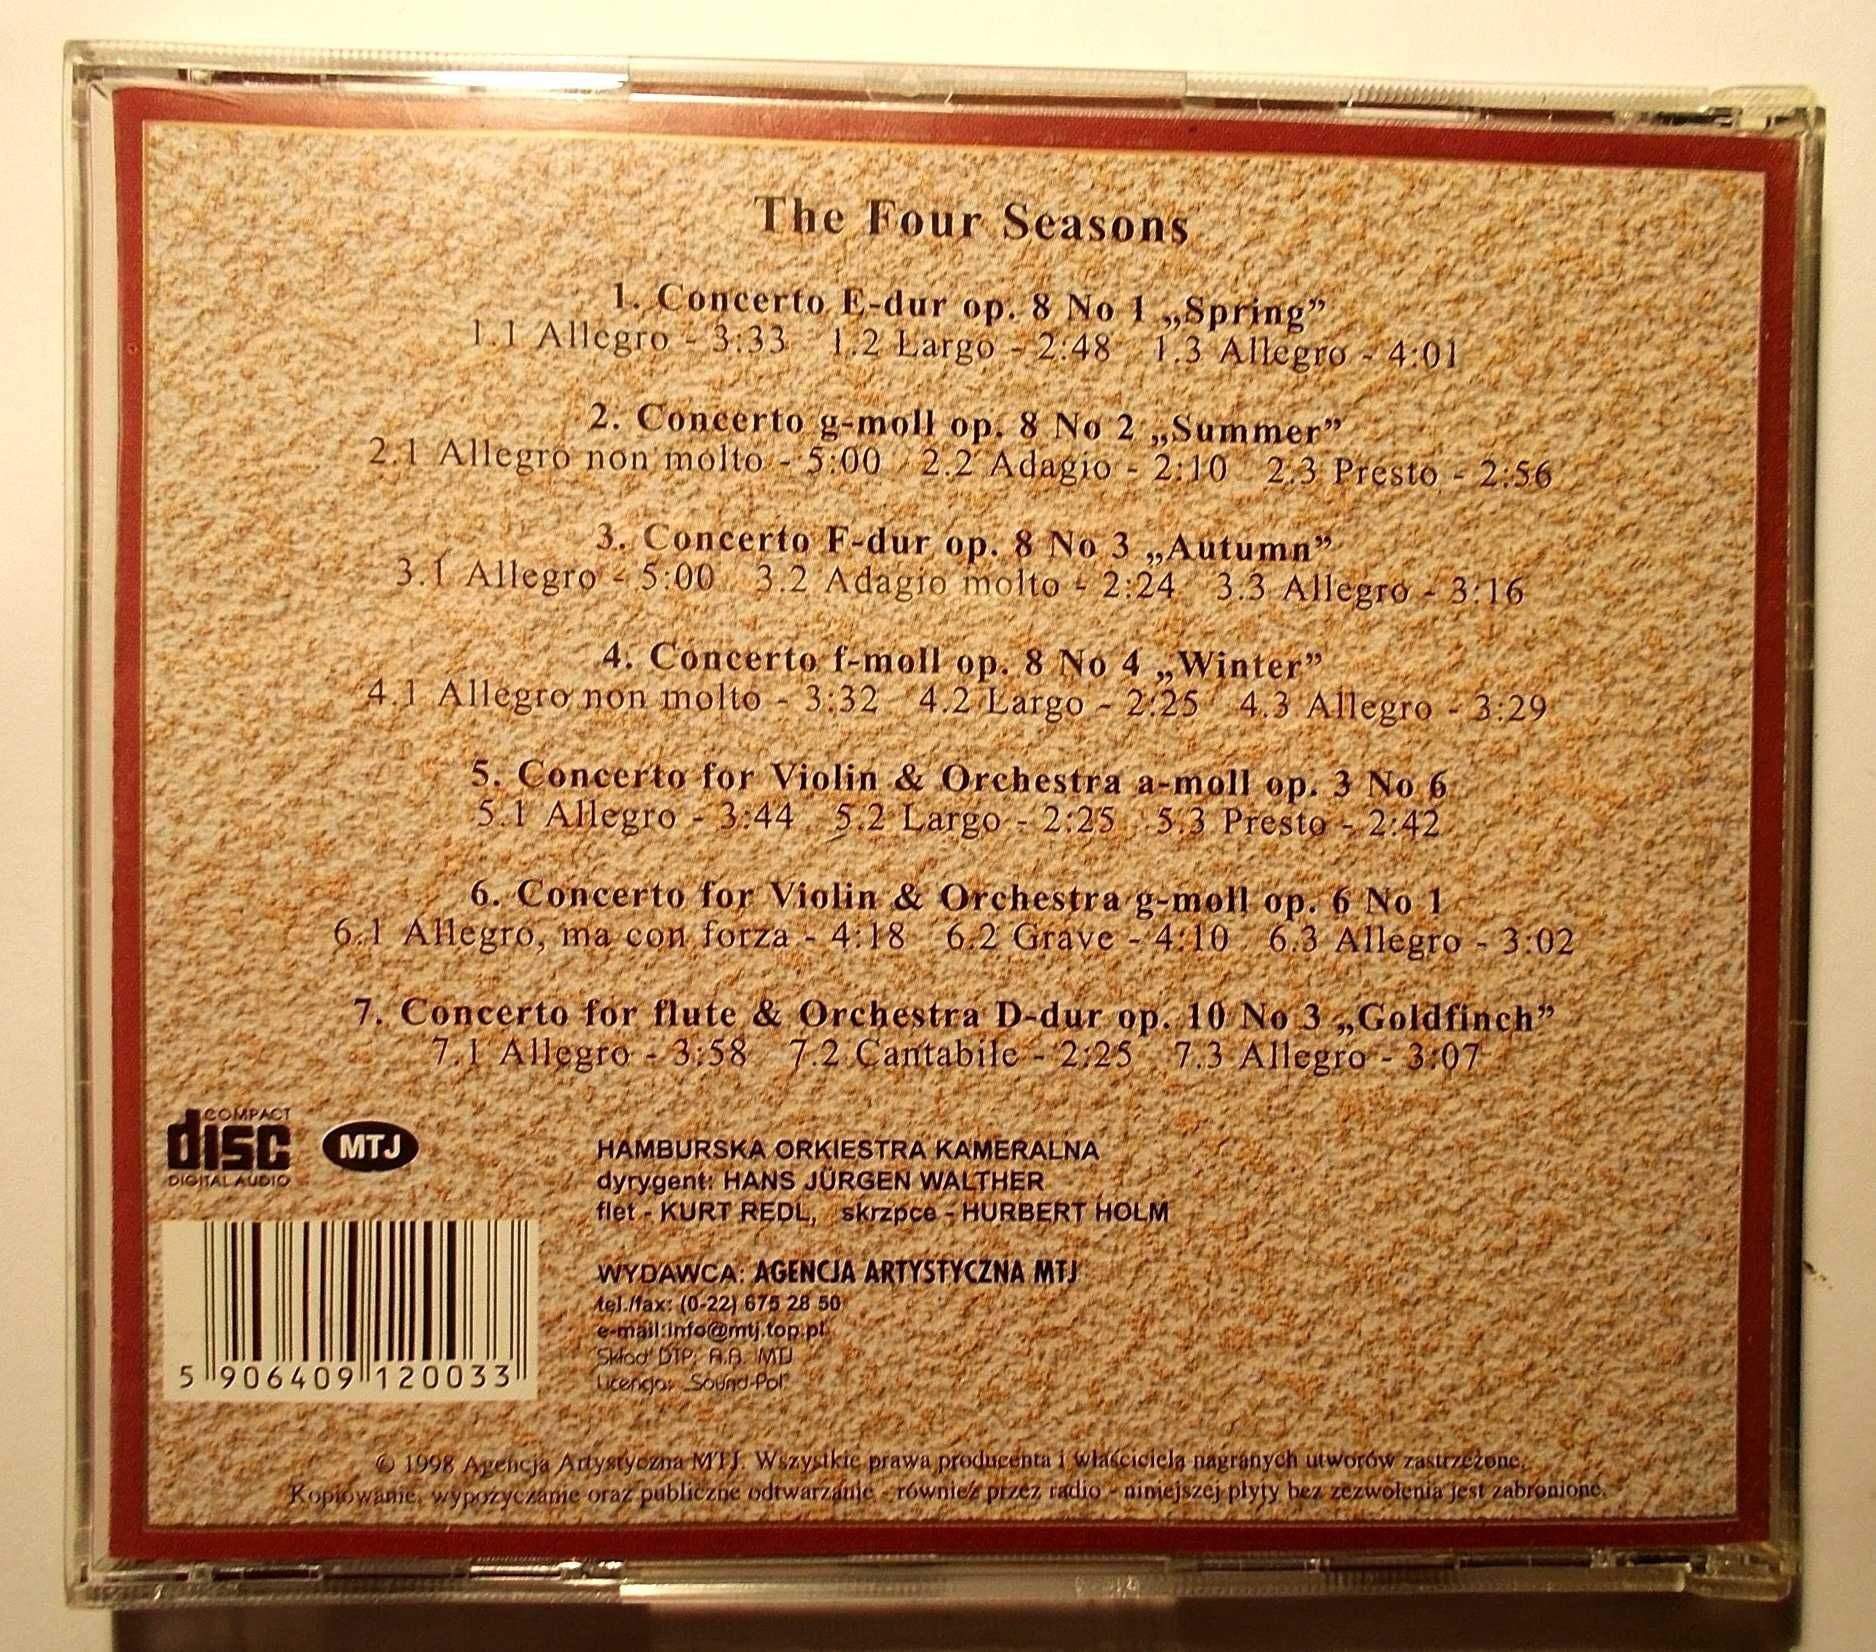 Płyta CD - Antonio Vivaldi - Concerto "Goldfinch" - (1998r.)